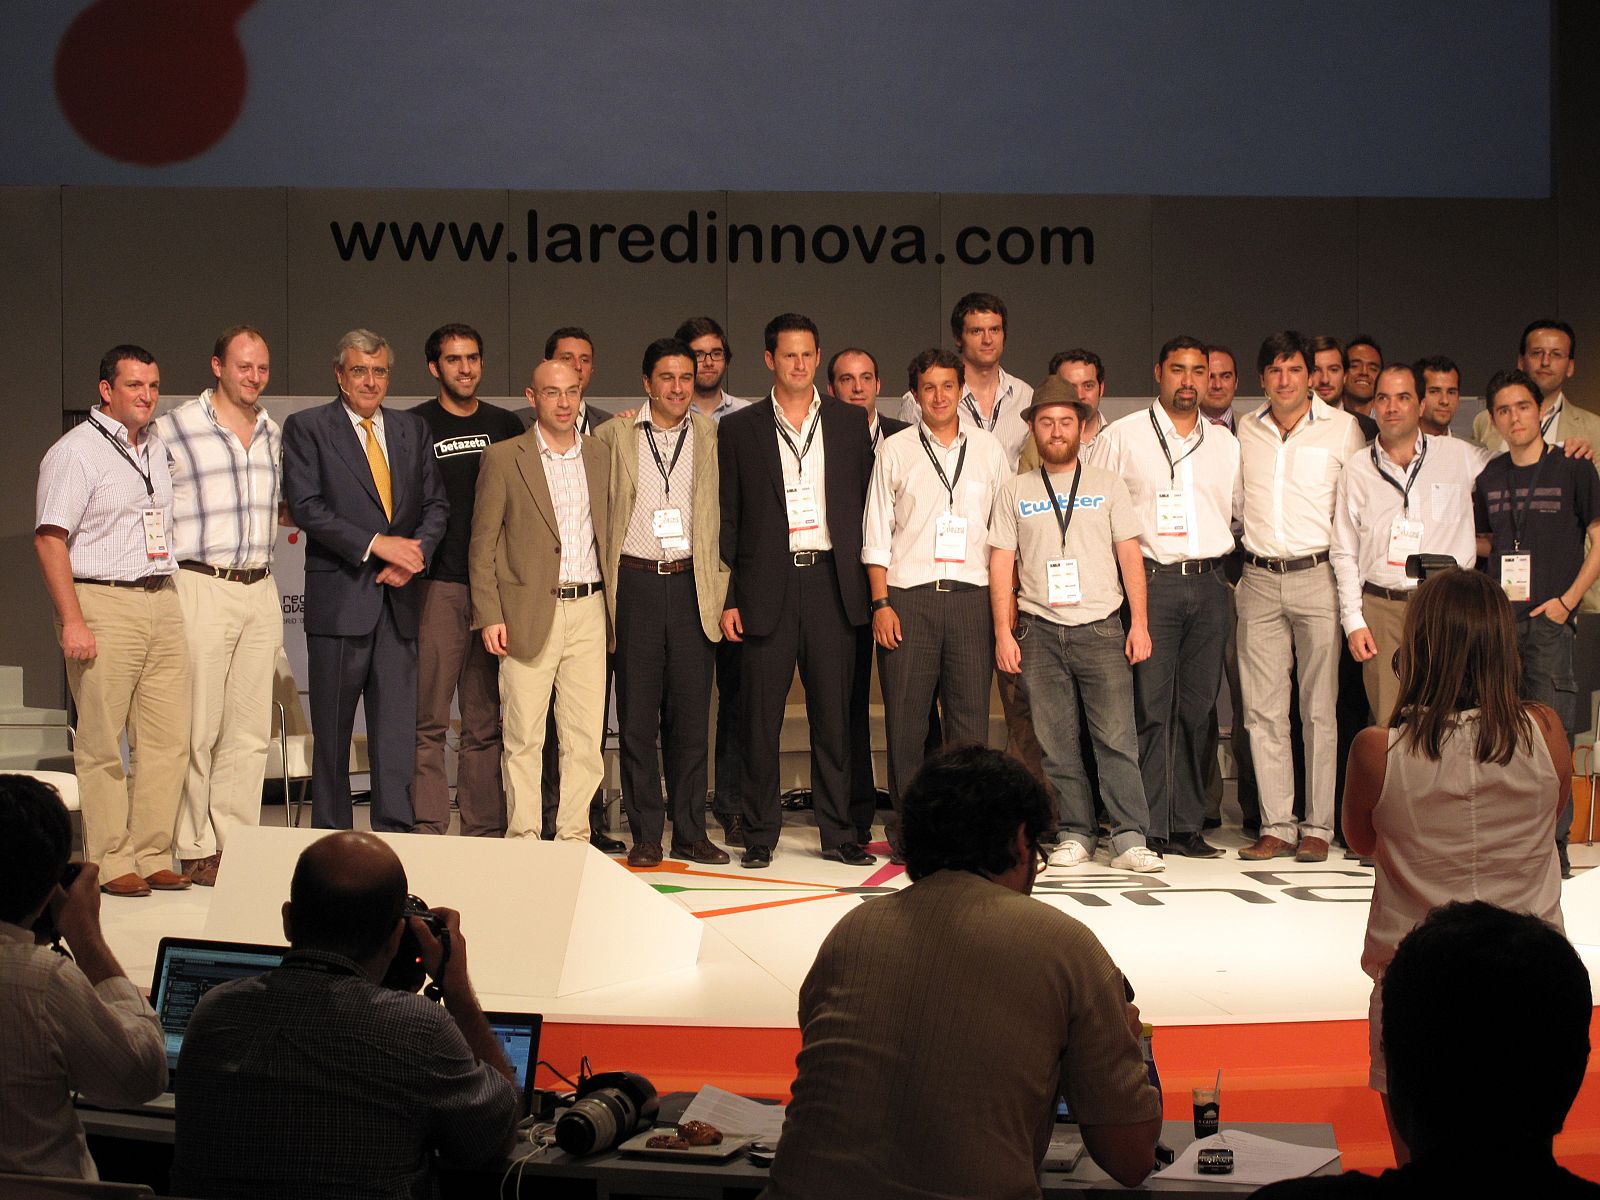 Finalistas de los 15 proyectos seleccionados en la competición de startups de la Red Innova.